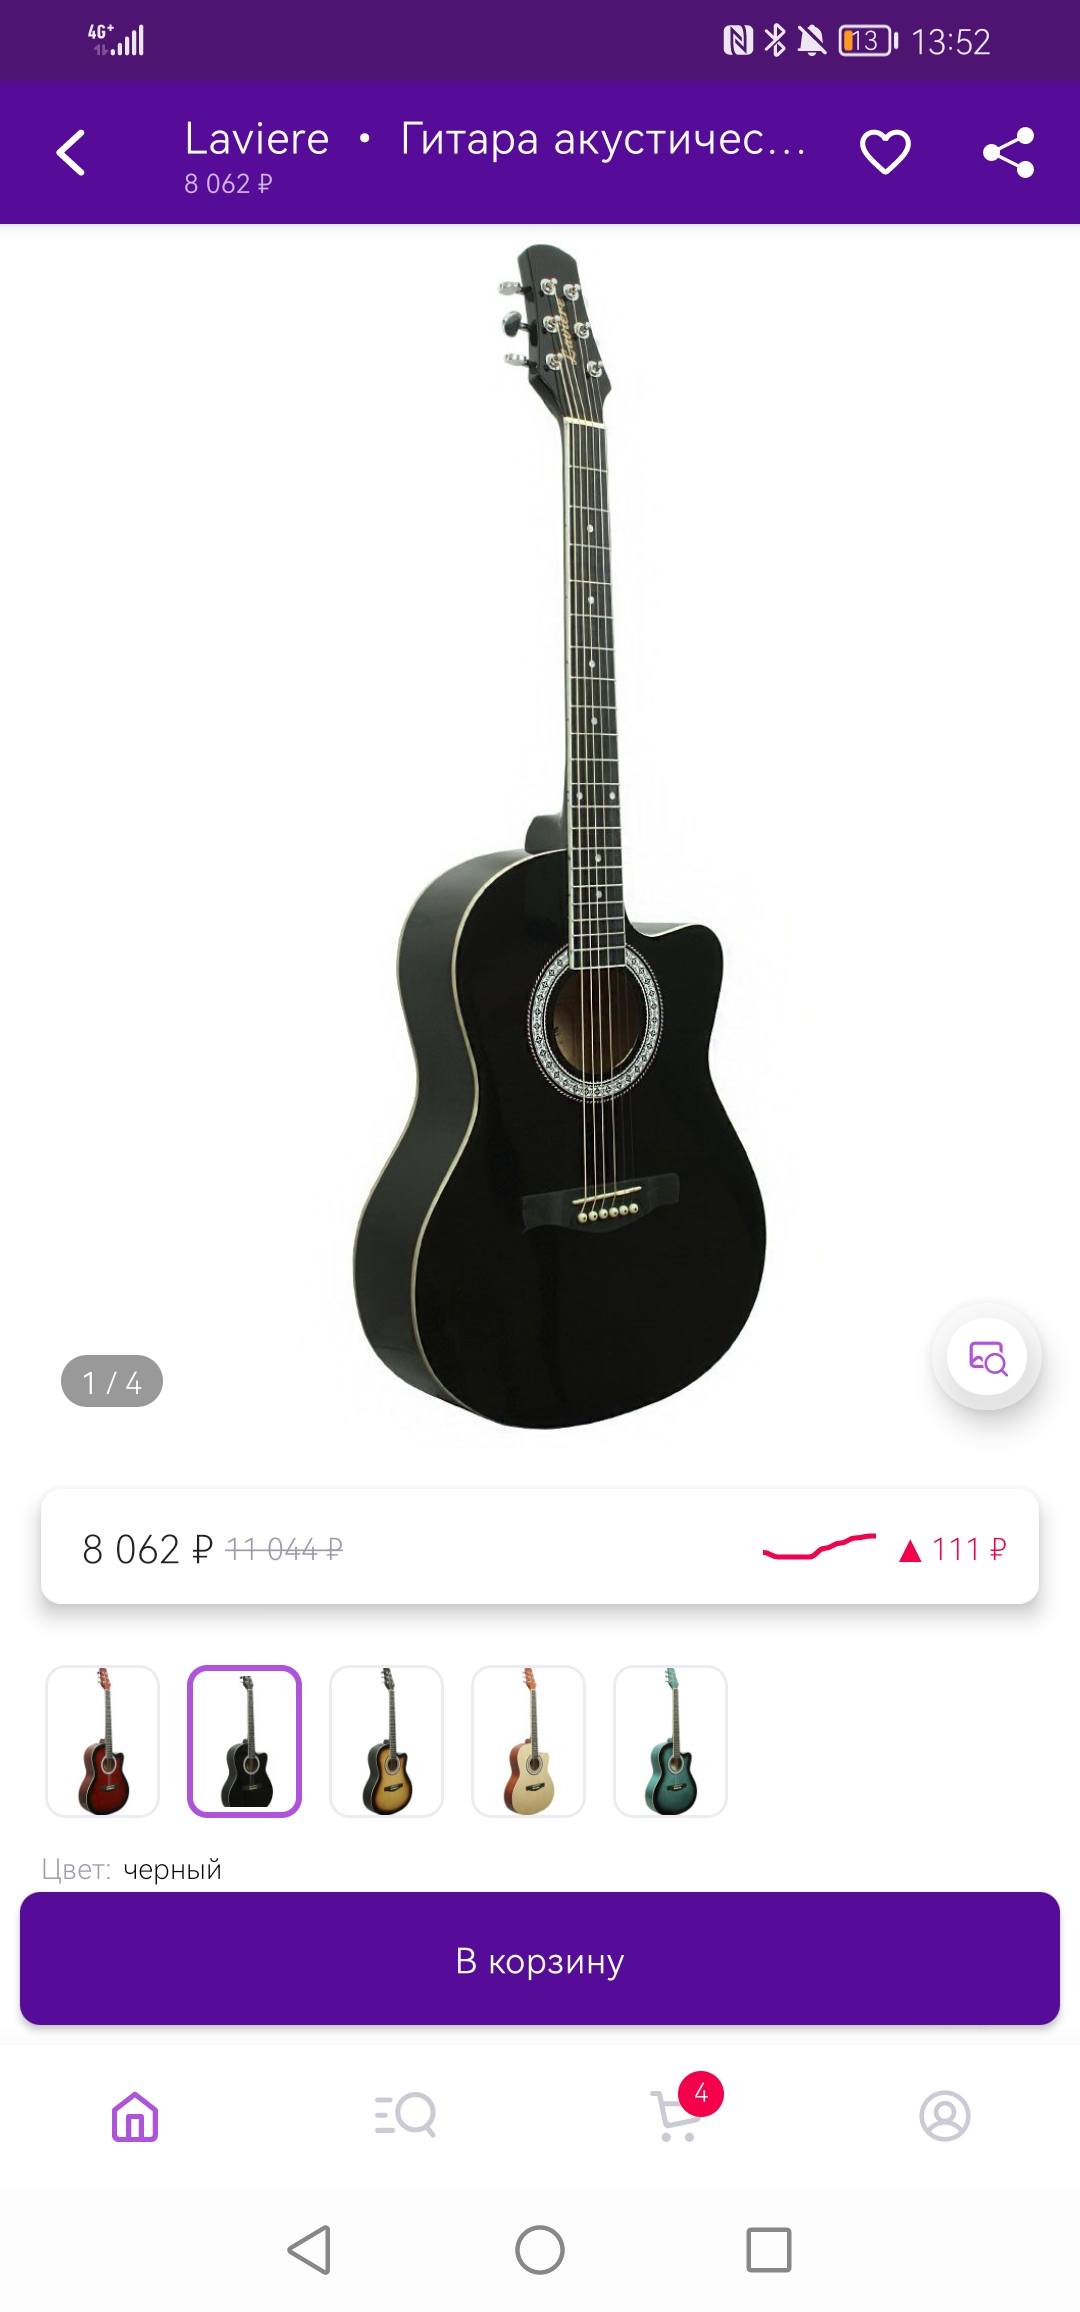 Хочу купить гитару